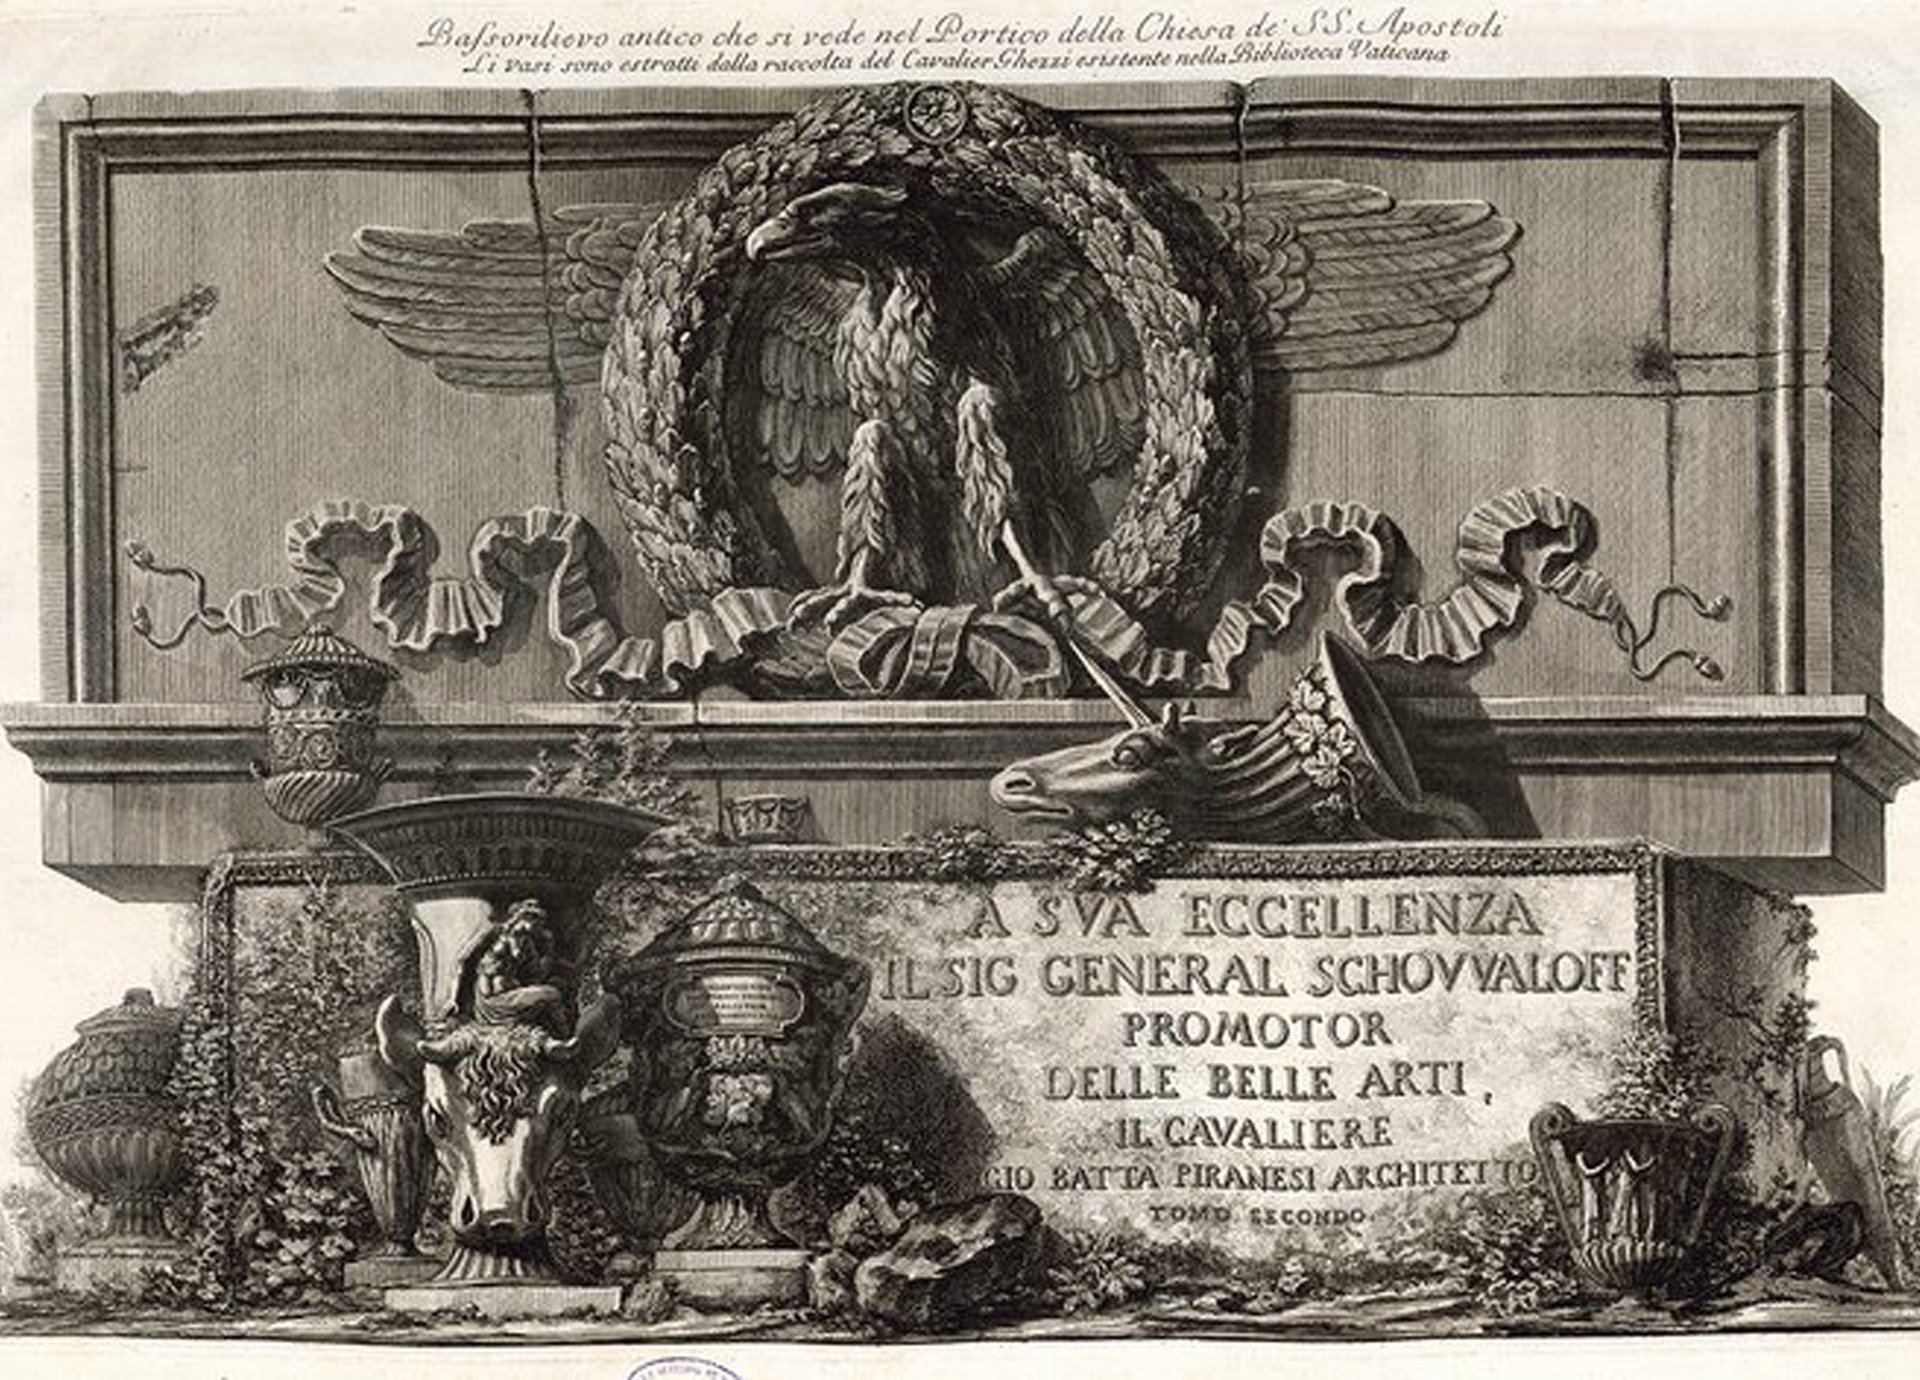 Abbildung eines Titelblattes von Giovanni Battista Piranesi. Es zeigt eine Tafel mit einem Lorbeerkranz. In dem Kranz ist ein Adler.